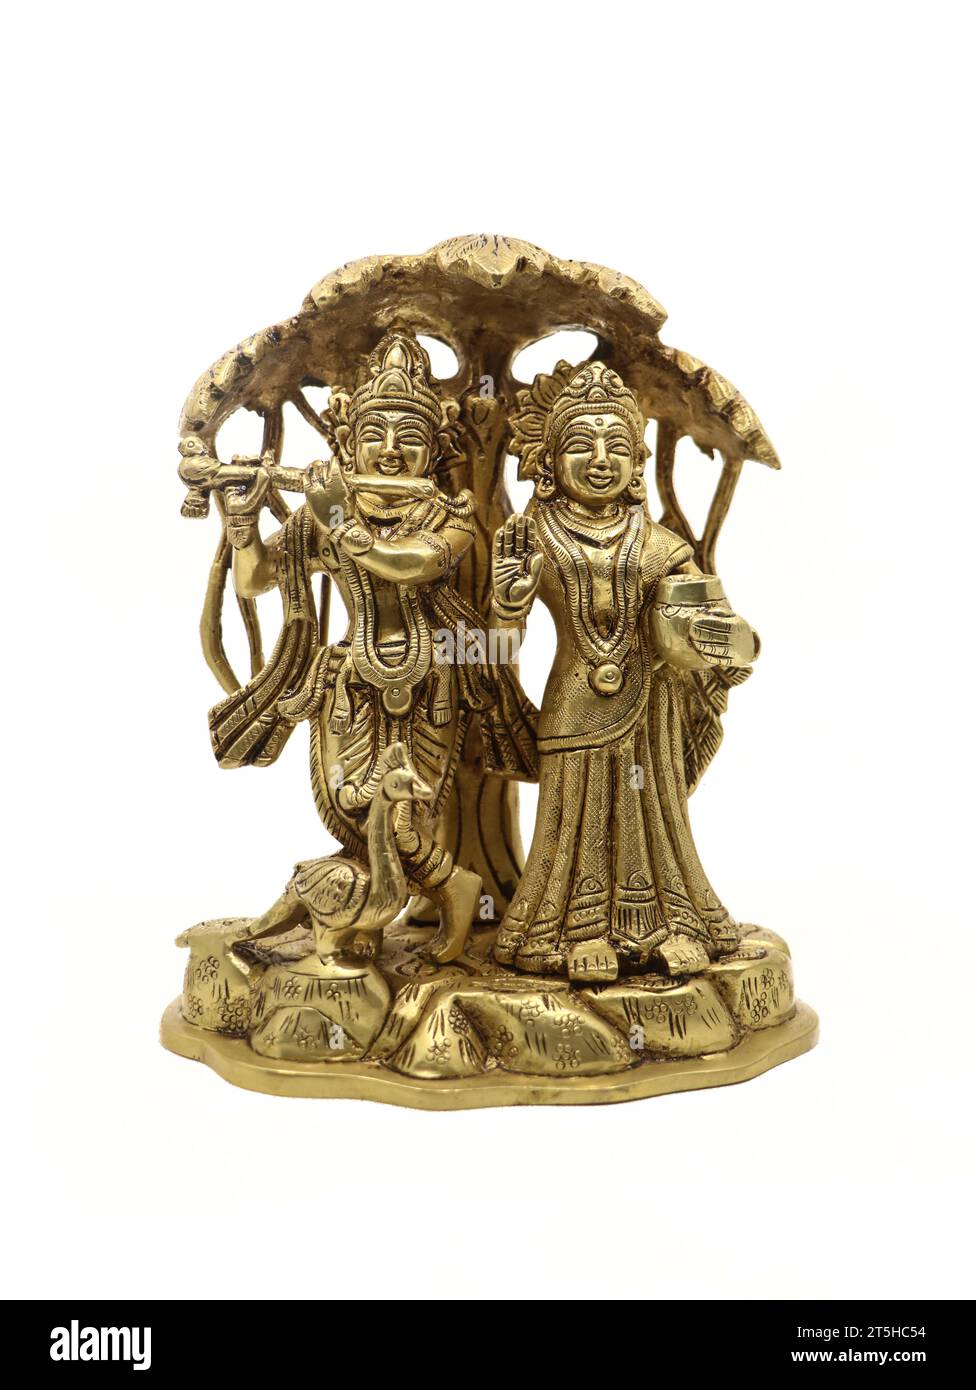 radha krishna sotto un idolo di bronzo di un albero proveniente da una collezione antica isolata su uno sfondo bianco Foto Stock